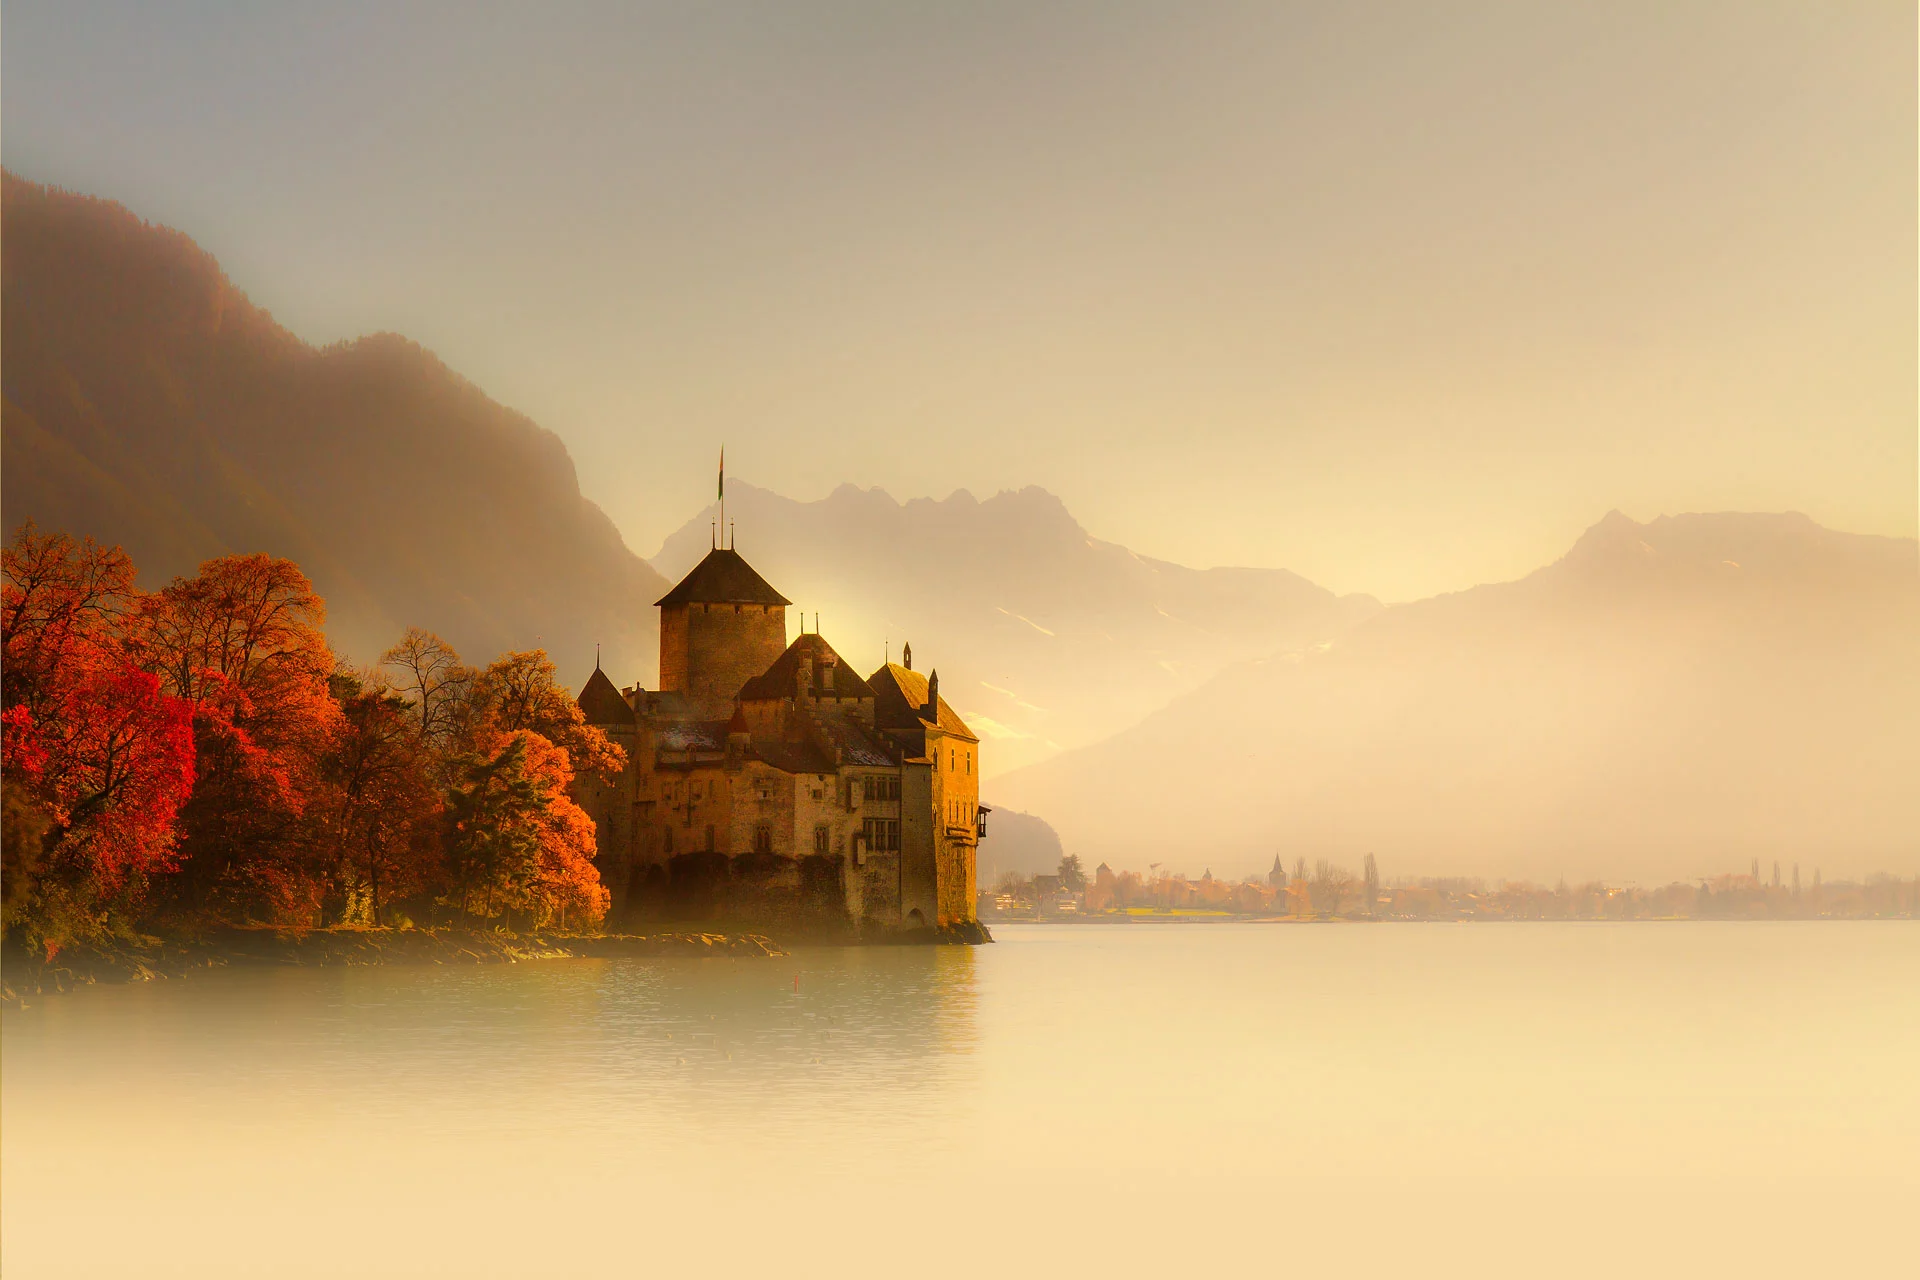 Autumn-in-Chillon-Castle-Montreux-Switzerland